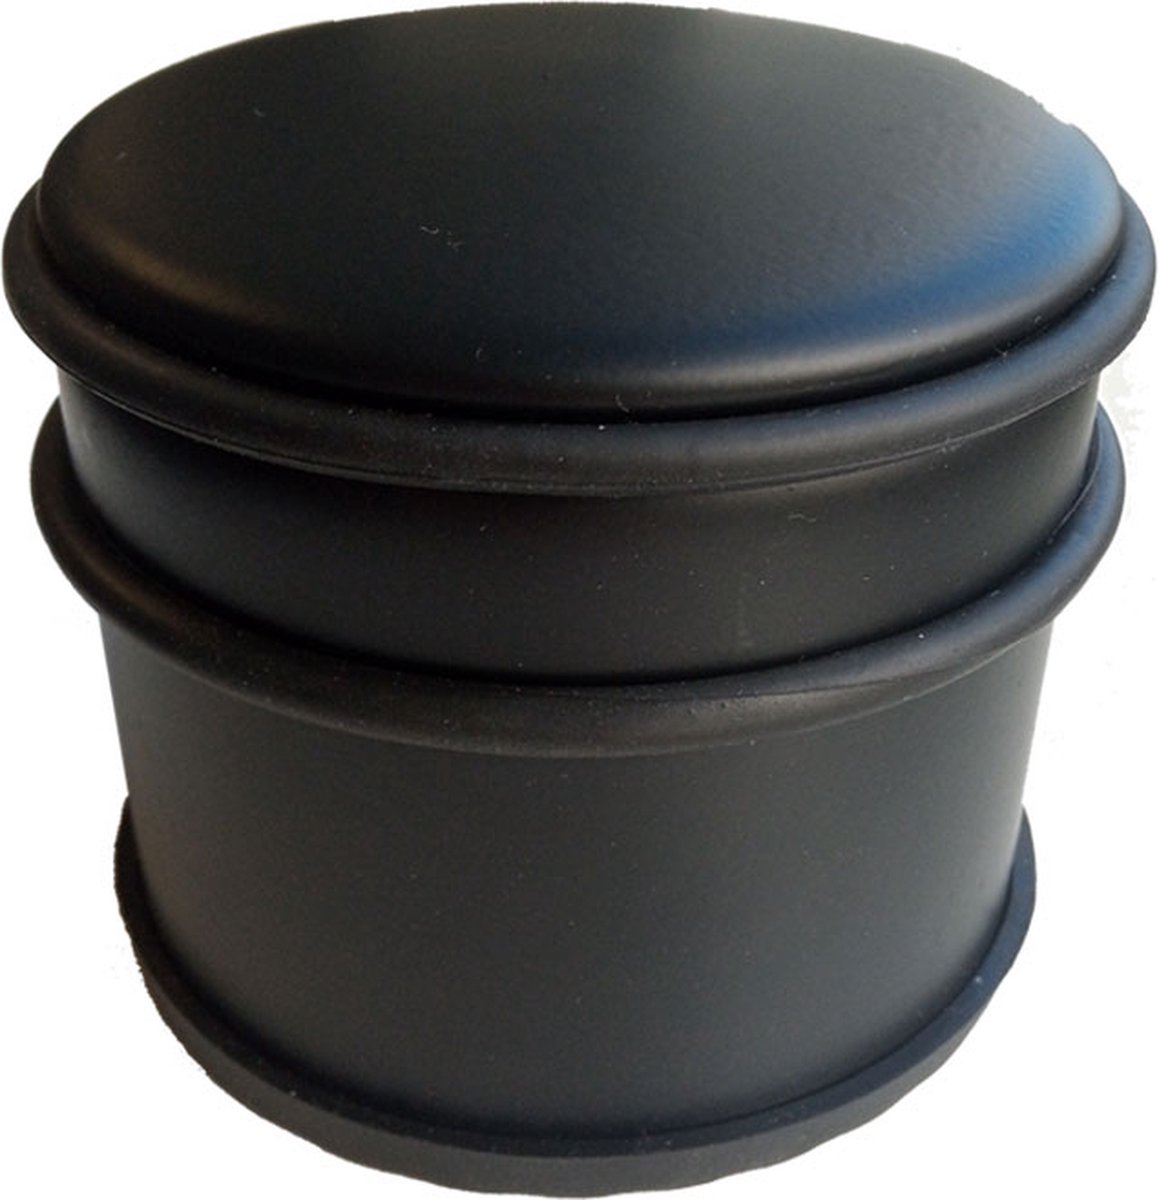 BRASQ Deurstopper Set van 4 Zwart 1,1 Kg - Voor binnen en buiten - Deurbuffer met anti-slip ⌀9 x 7,5 cm